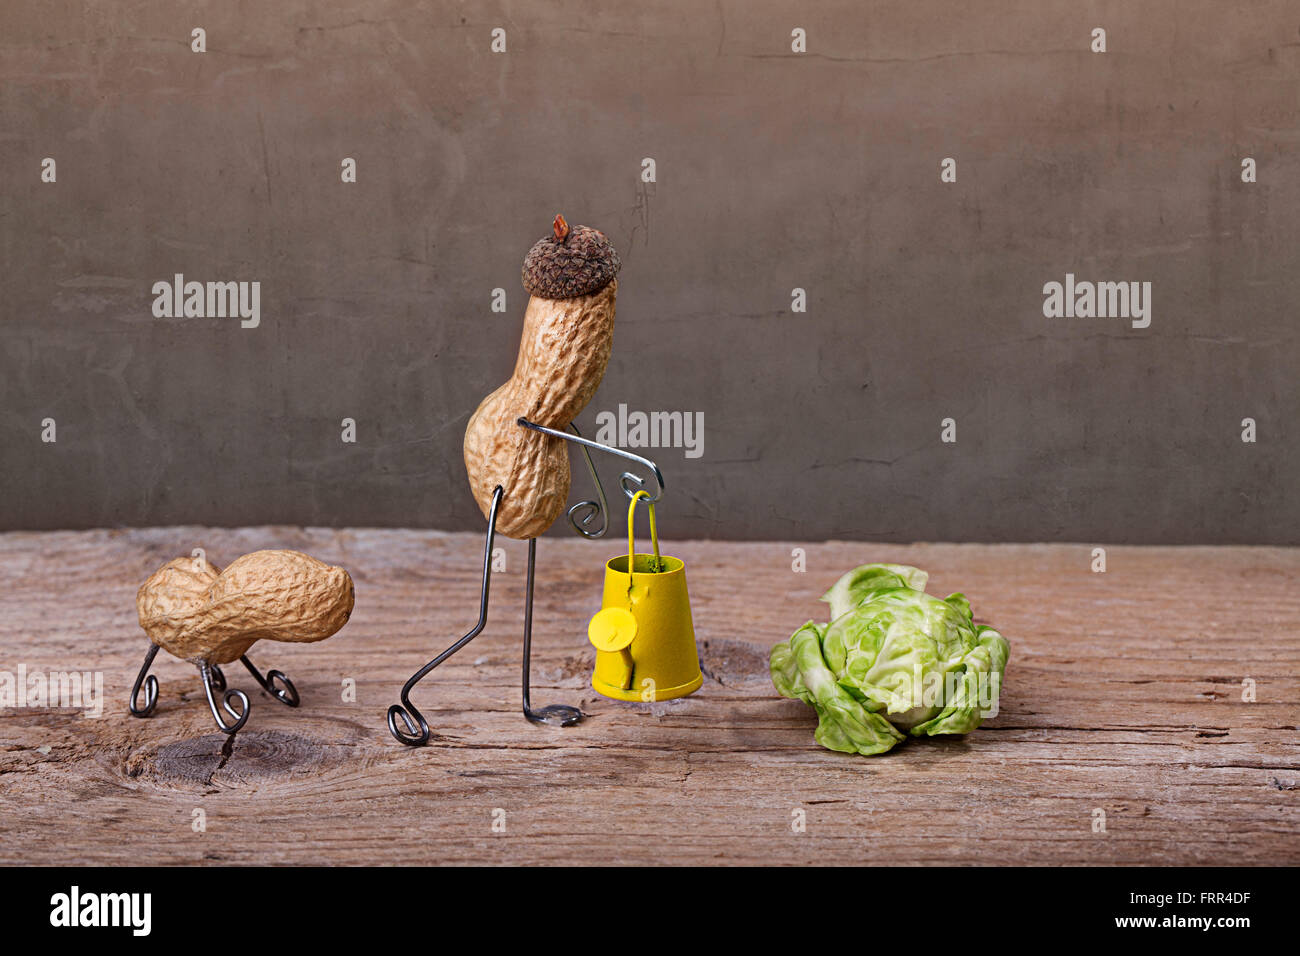 Miniaturizzato con uomo di arachidi giardino facendo lavorare con il suo cane Foto Stock